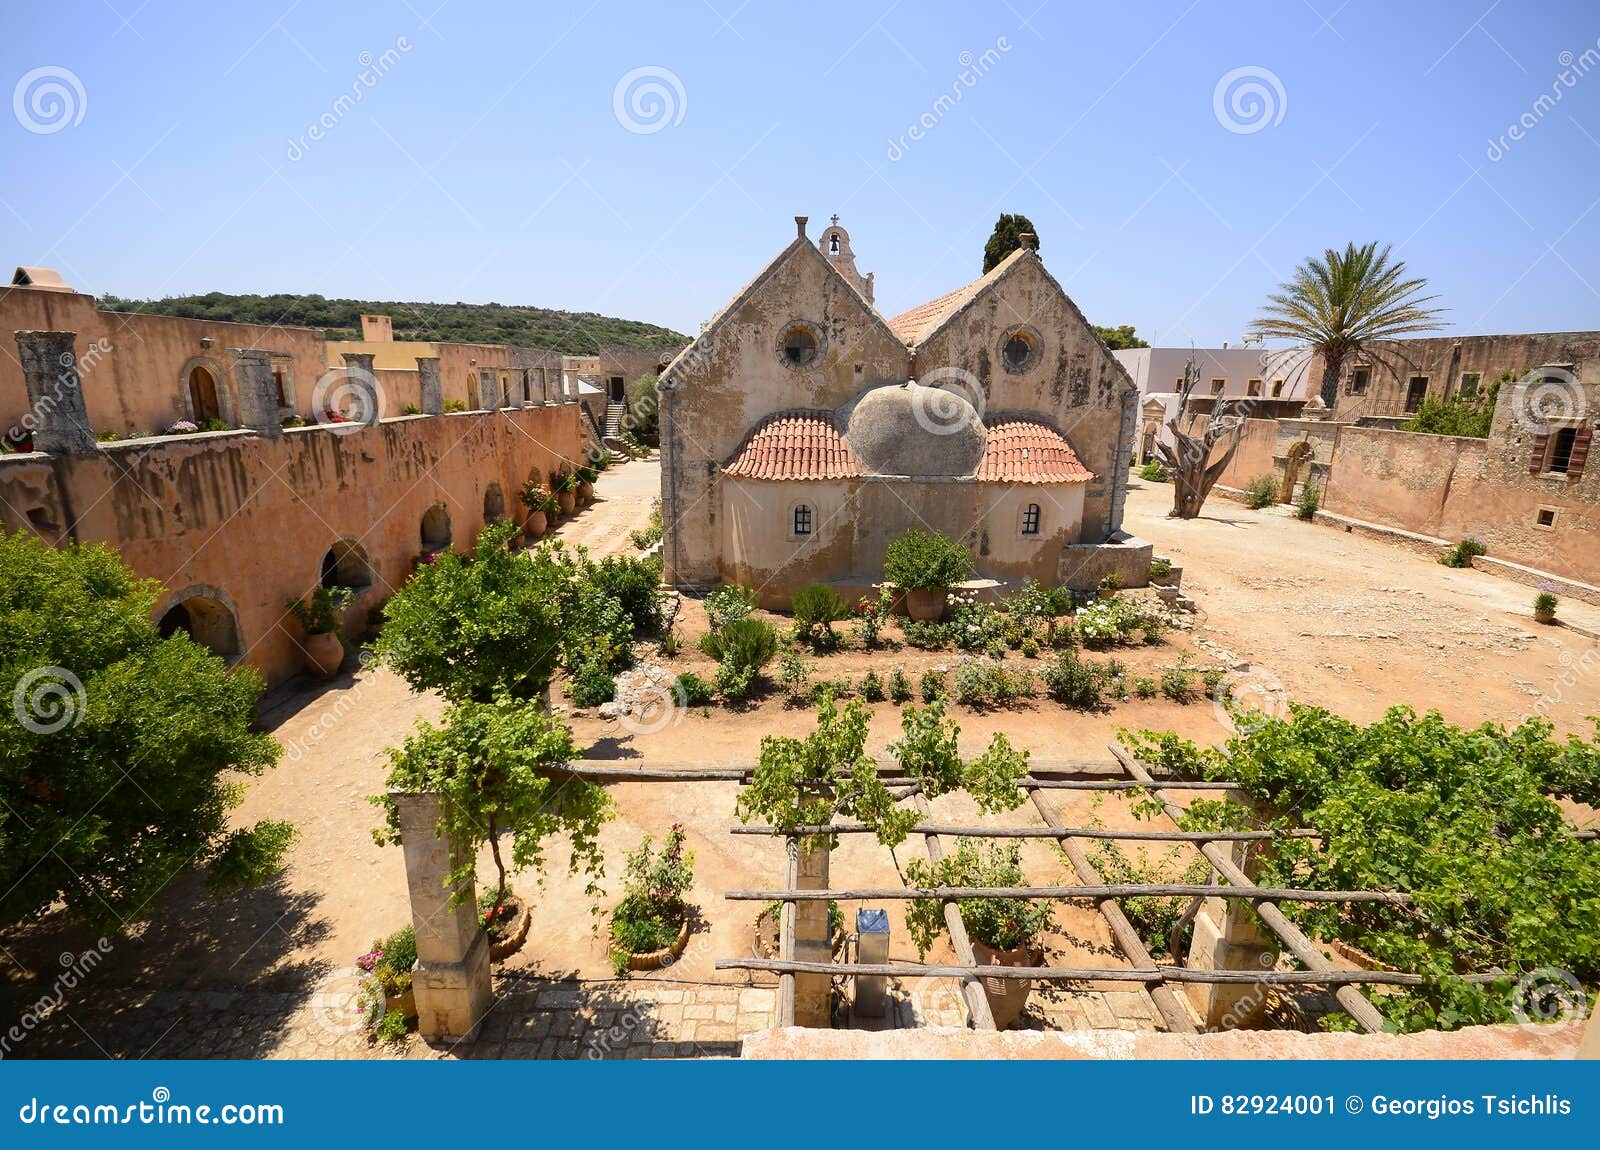 arkadi monastery and country yard, crete